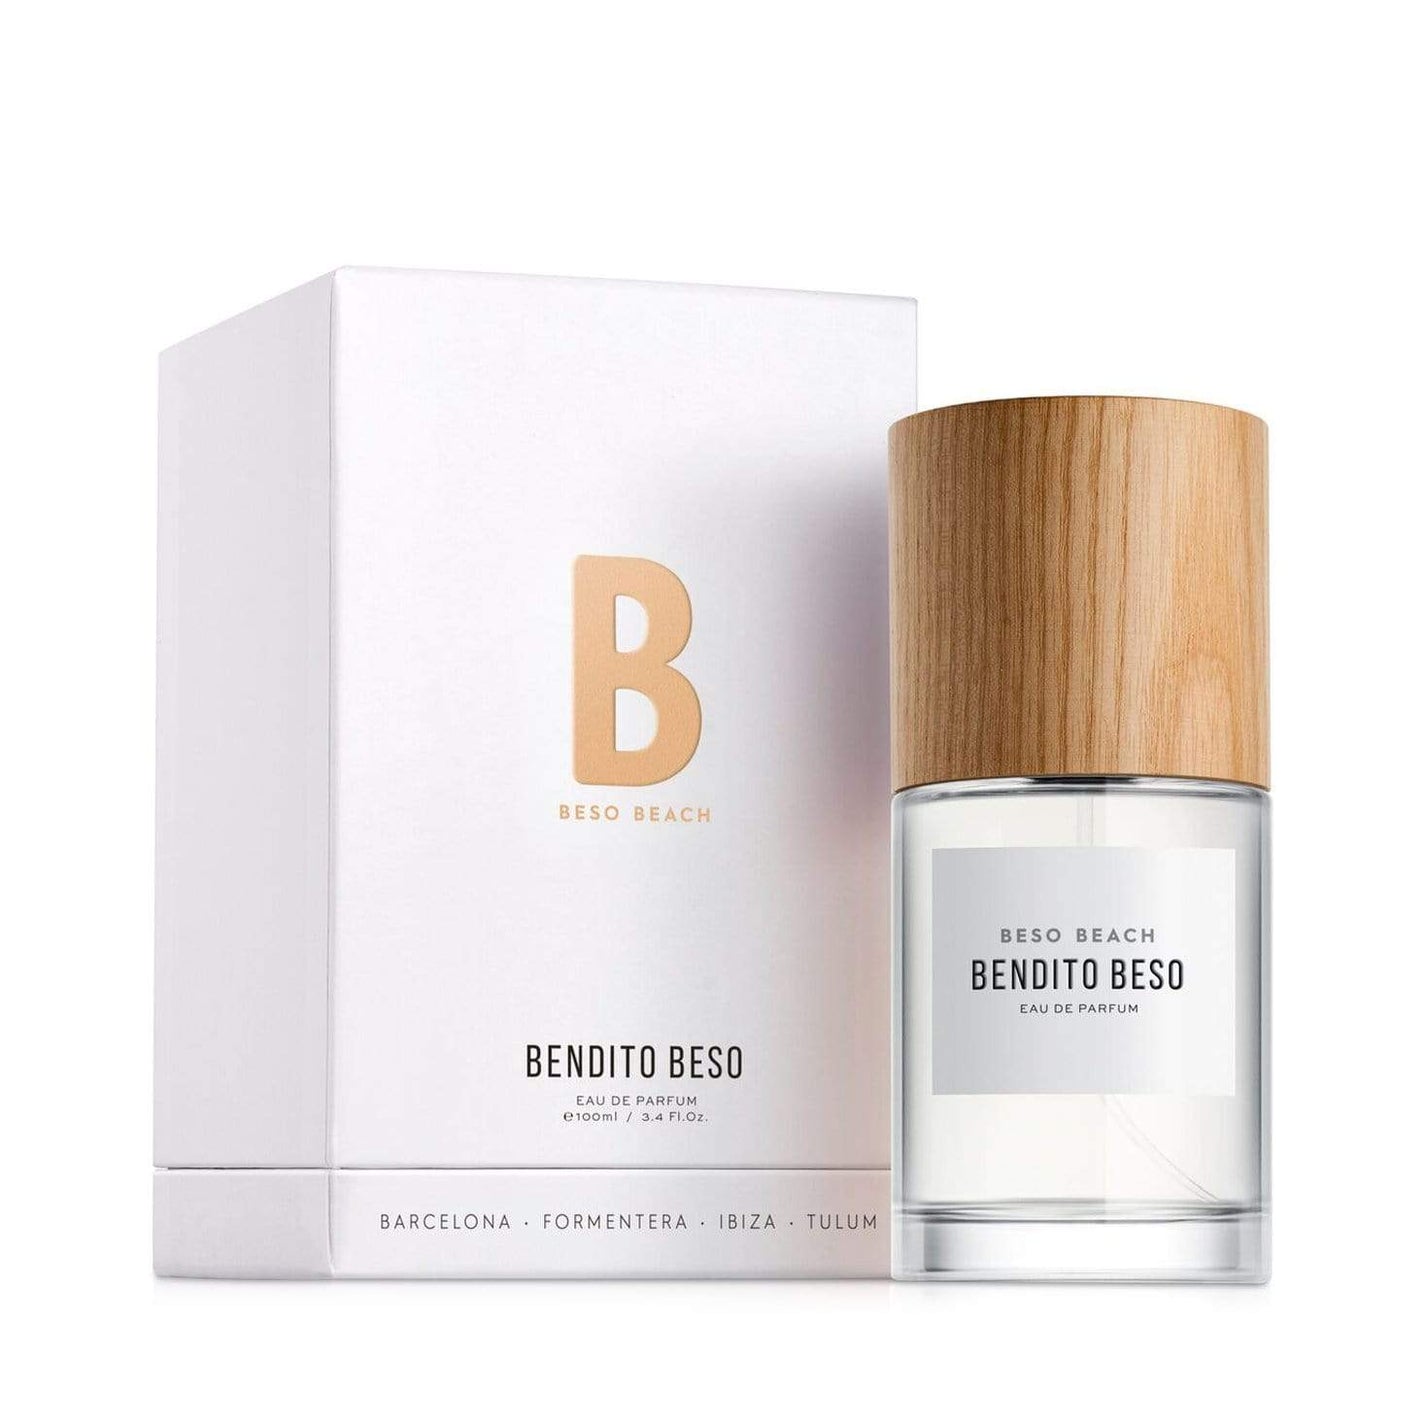 Beso Beach Bendito Beso Eau de Parfum - 100ml